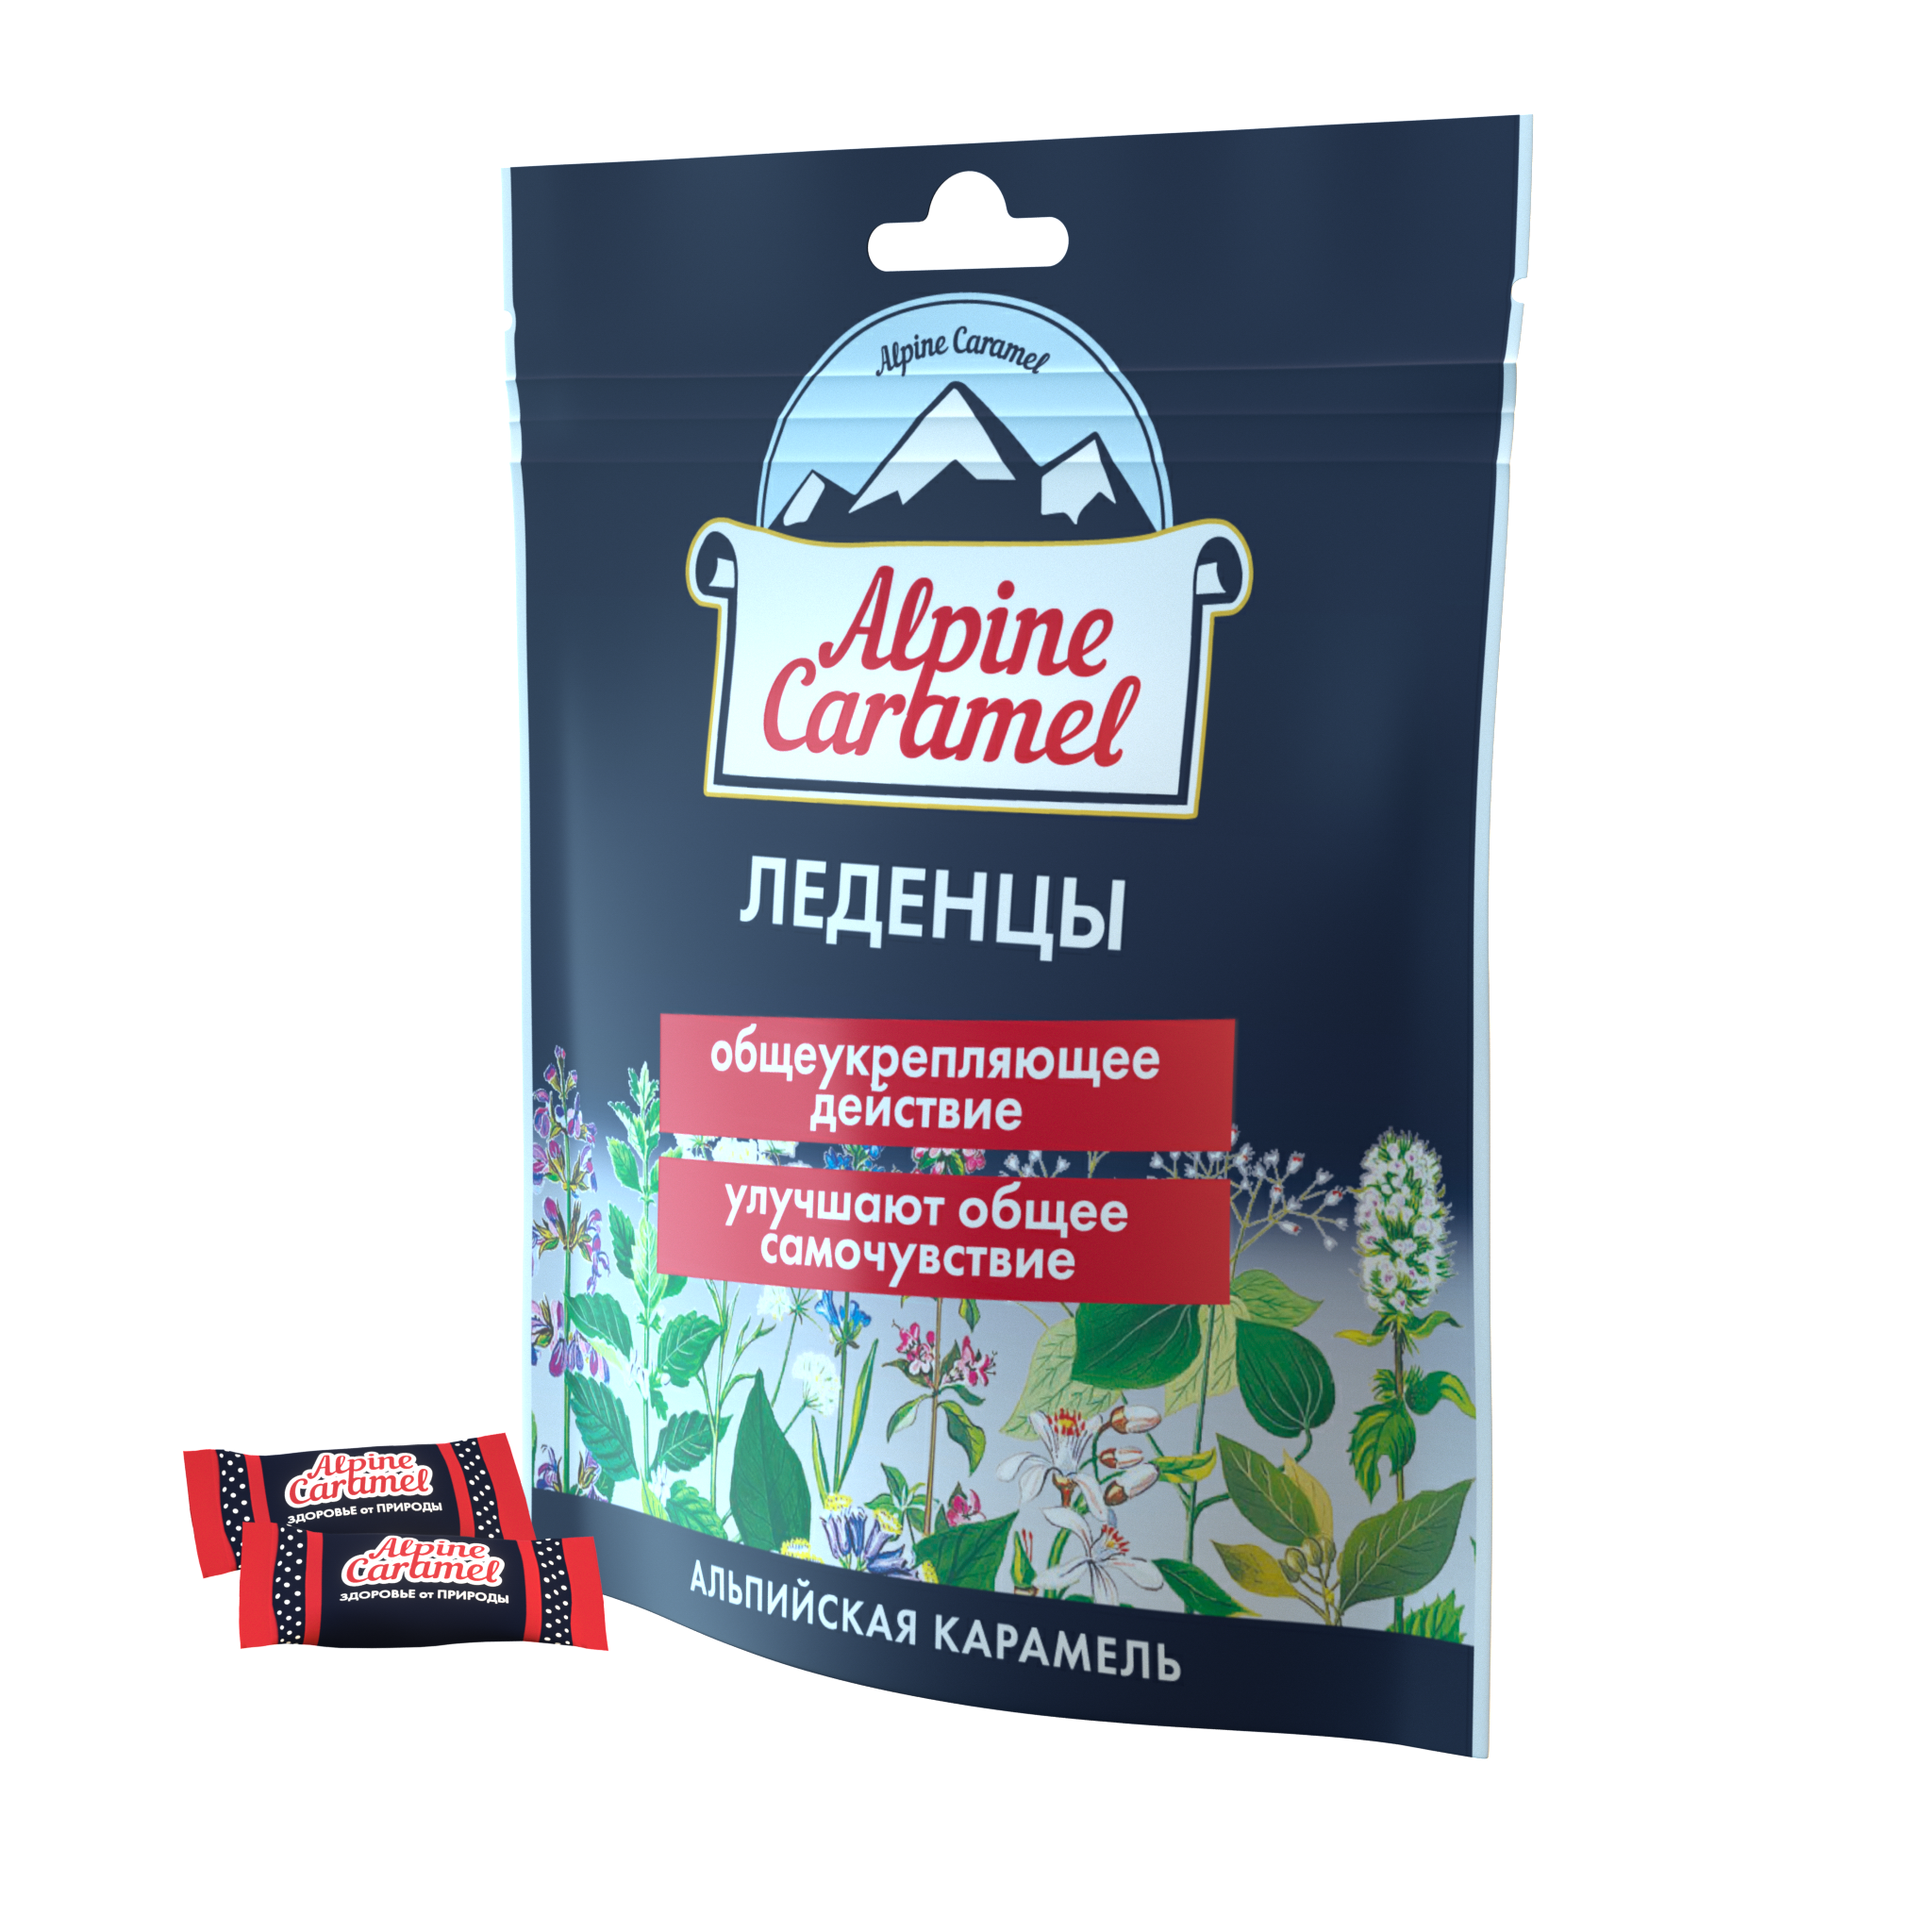 Alpine Caramel Альпийская Карамель леденцы, 75 г alpine caramel альпийская карамель леденцы 75 г